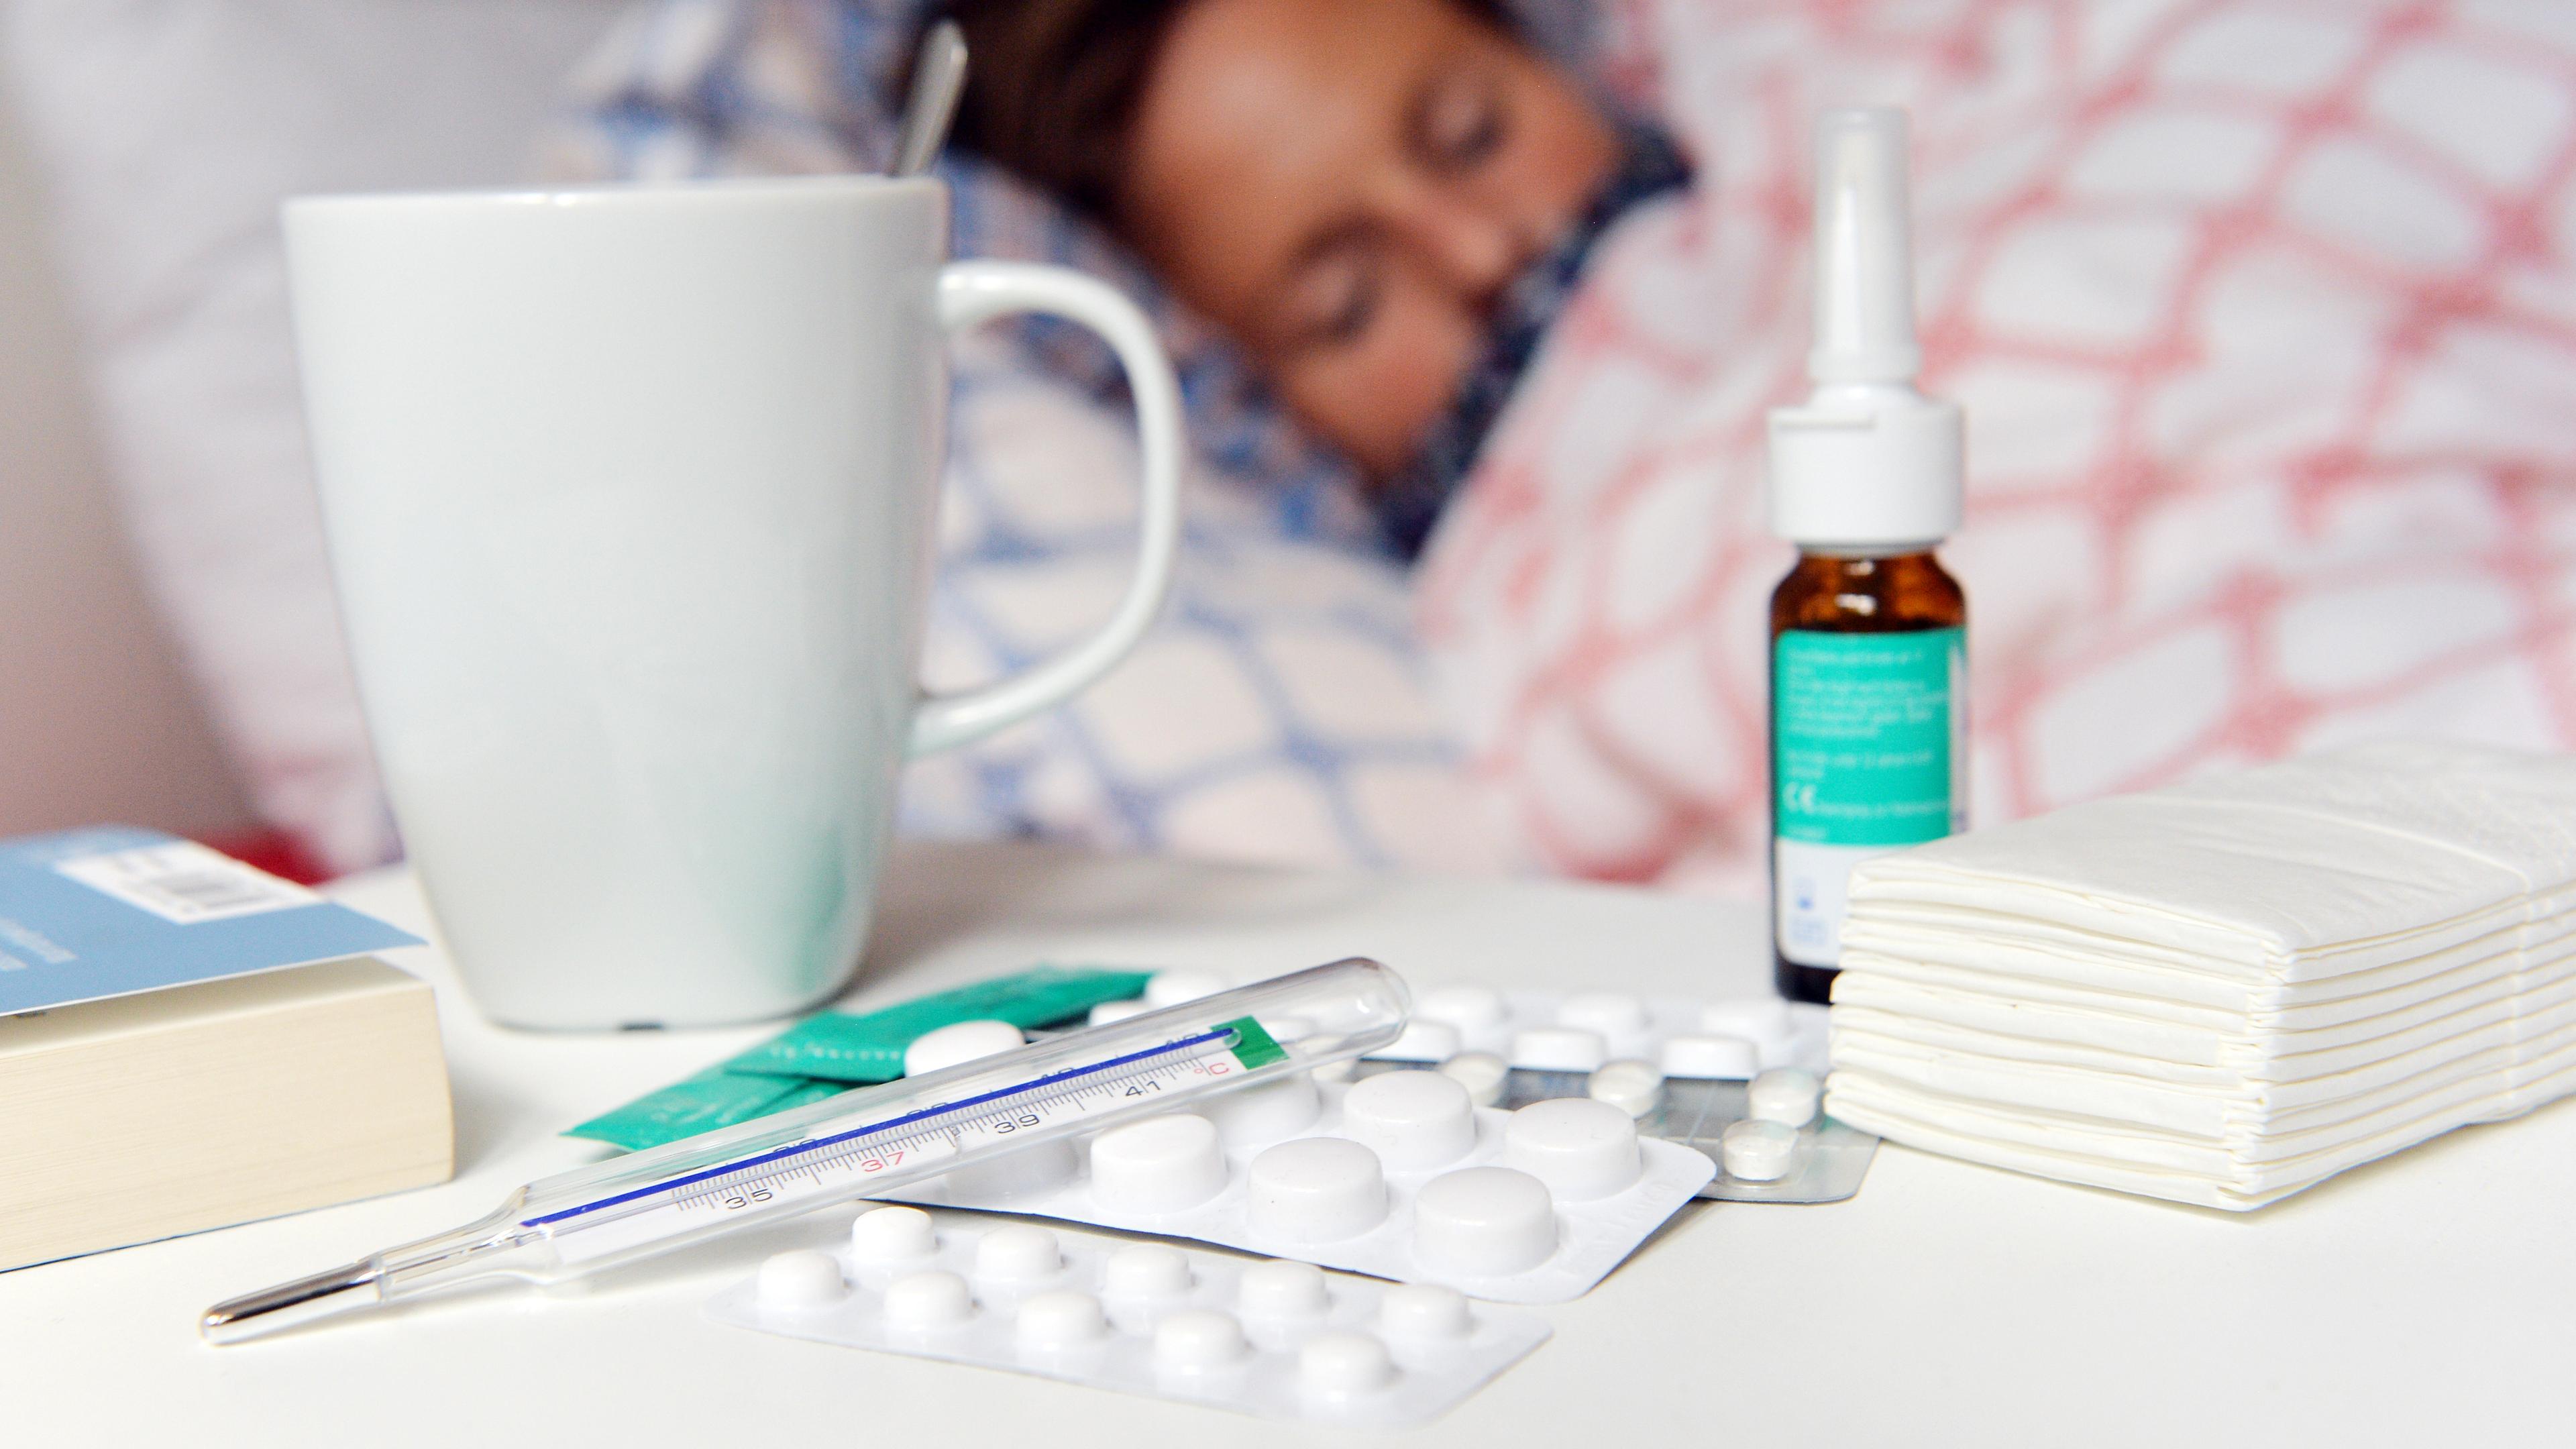 Eine kranke Person liegt im Bett, vor ihr eine Reihe Medikamente und ein Fieberthermometer. (Symbolbild)